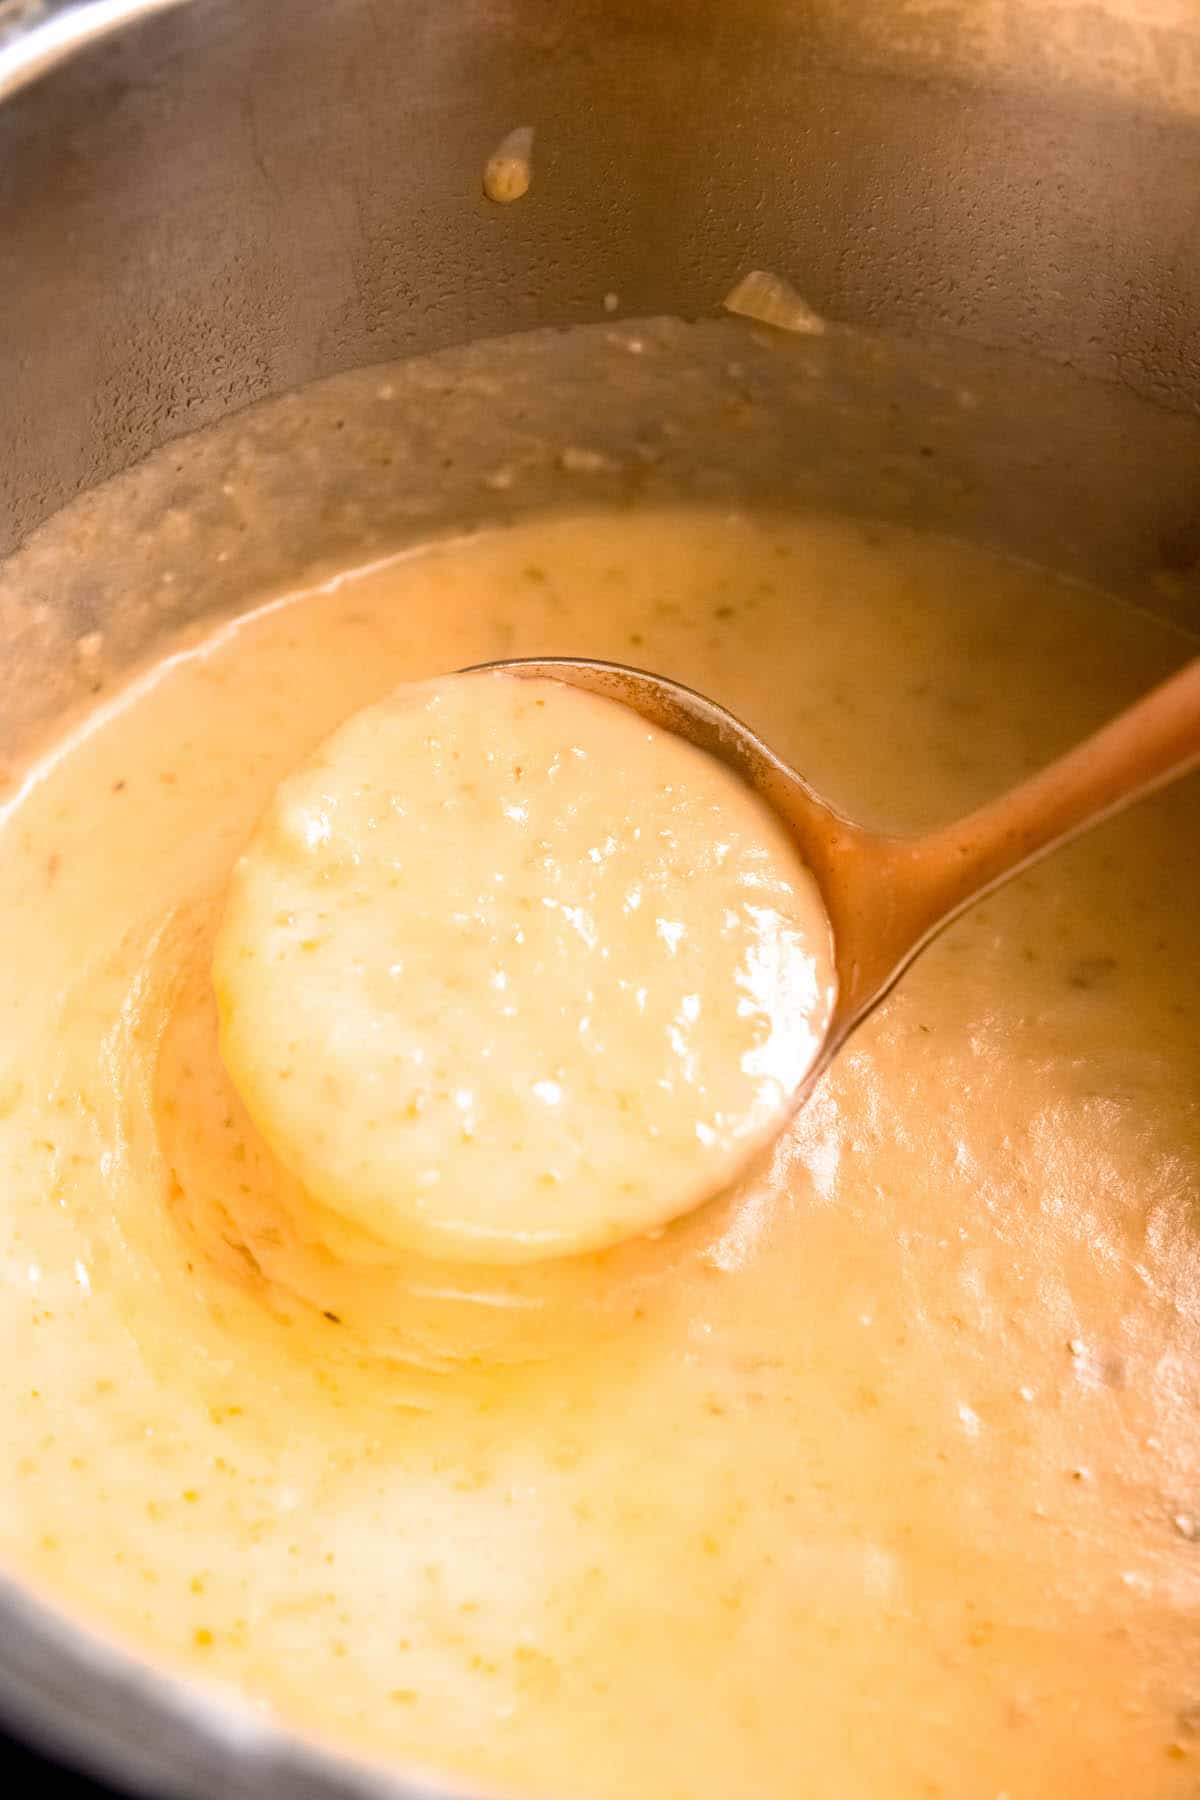 ladleful of creamy gluten free potato soup after blending till still slightly chunky.